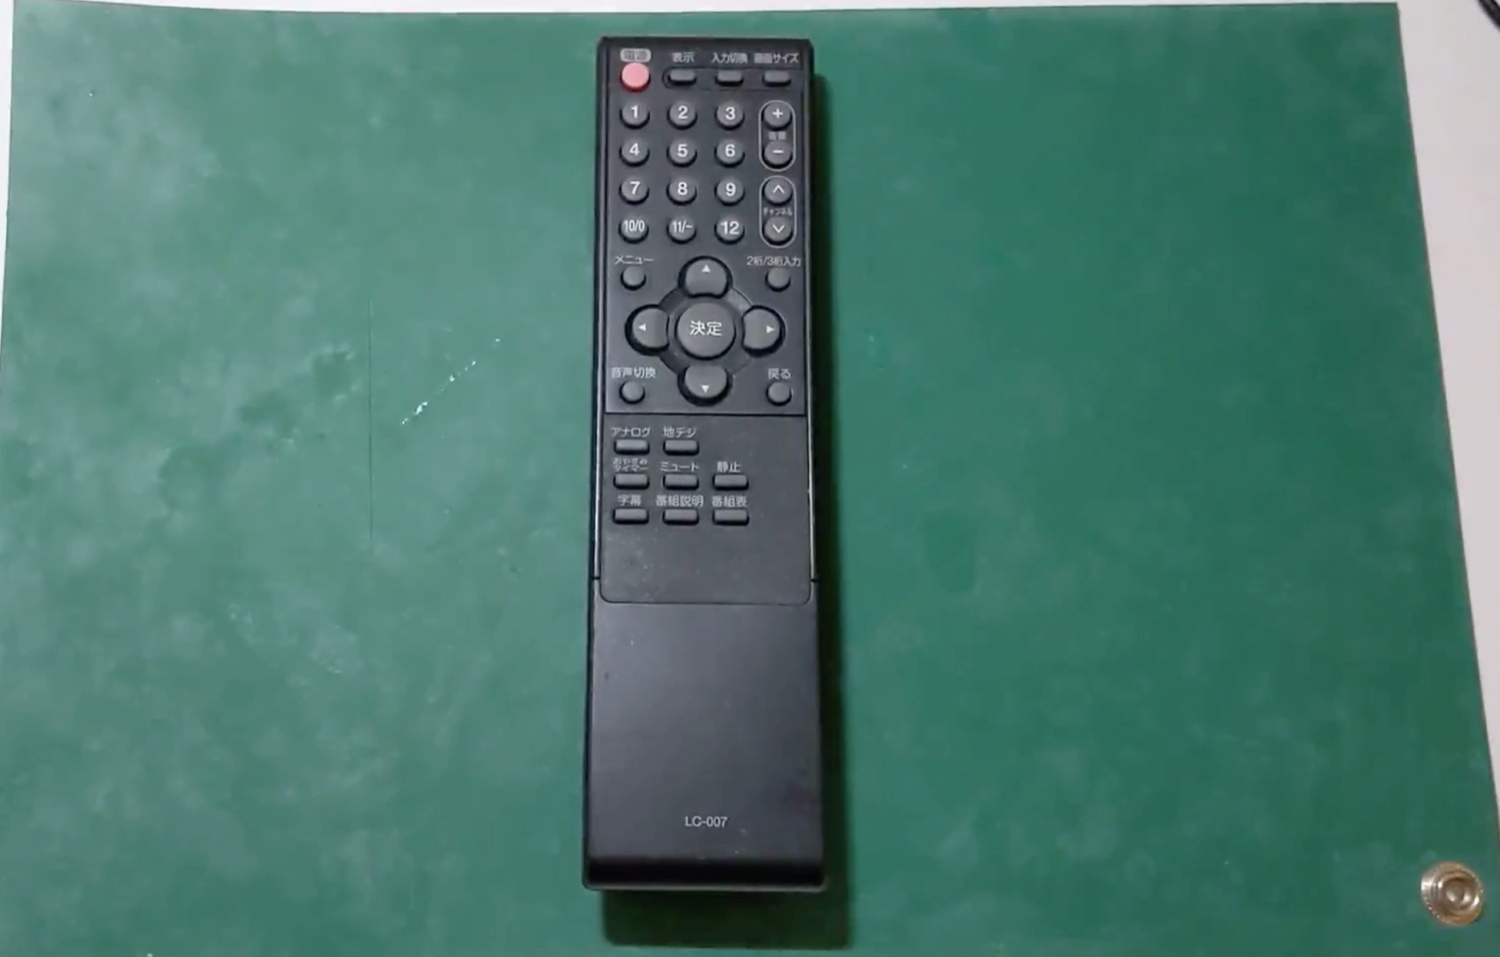 テレビのリモコンが故障した(ボタンが効かない)ので分解修理した【動画あり】 - 機械設計学習館